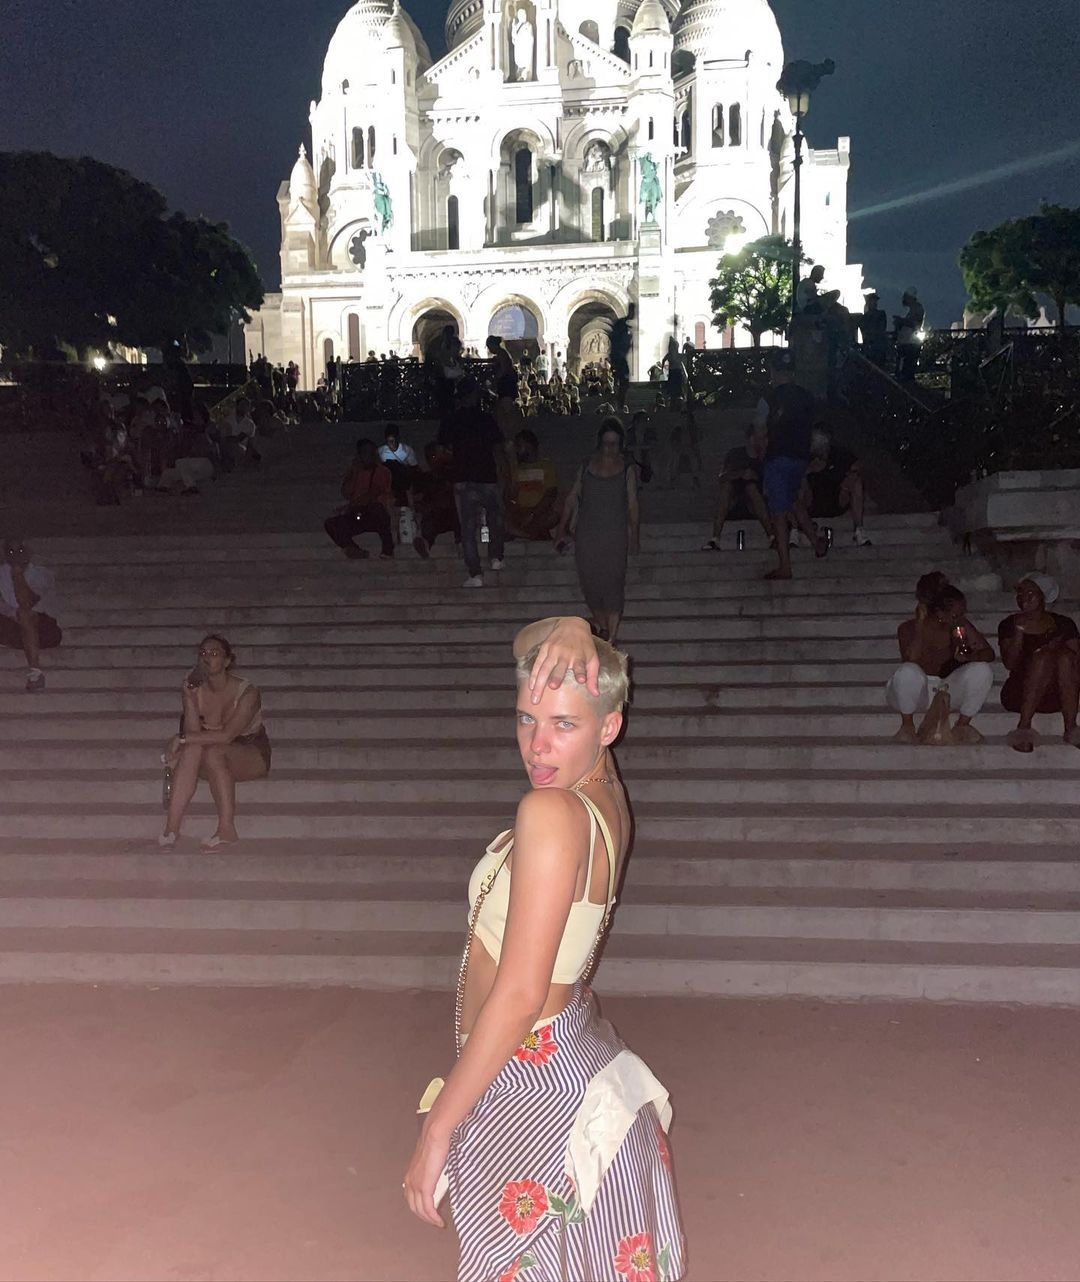 Bruna Linzmeyer com a basílica de Sacré-Coeur, no bairro de Montmartre, ao fundo (Foto: Reprodução Instagram)